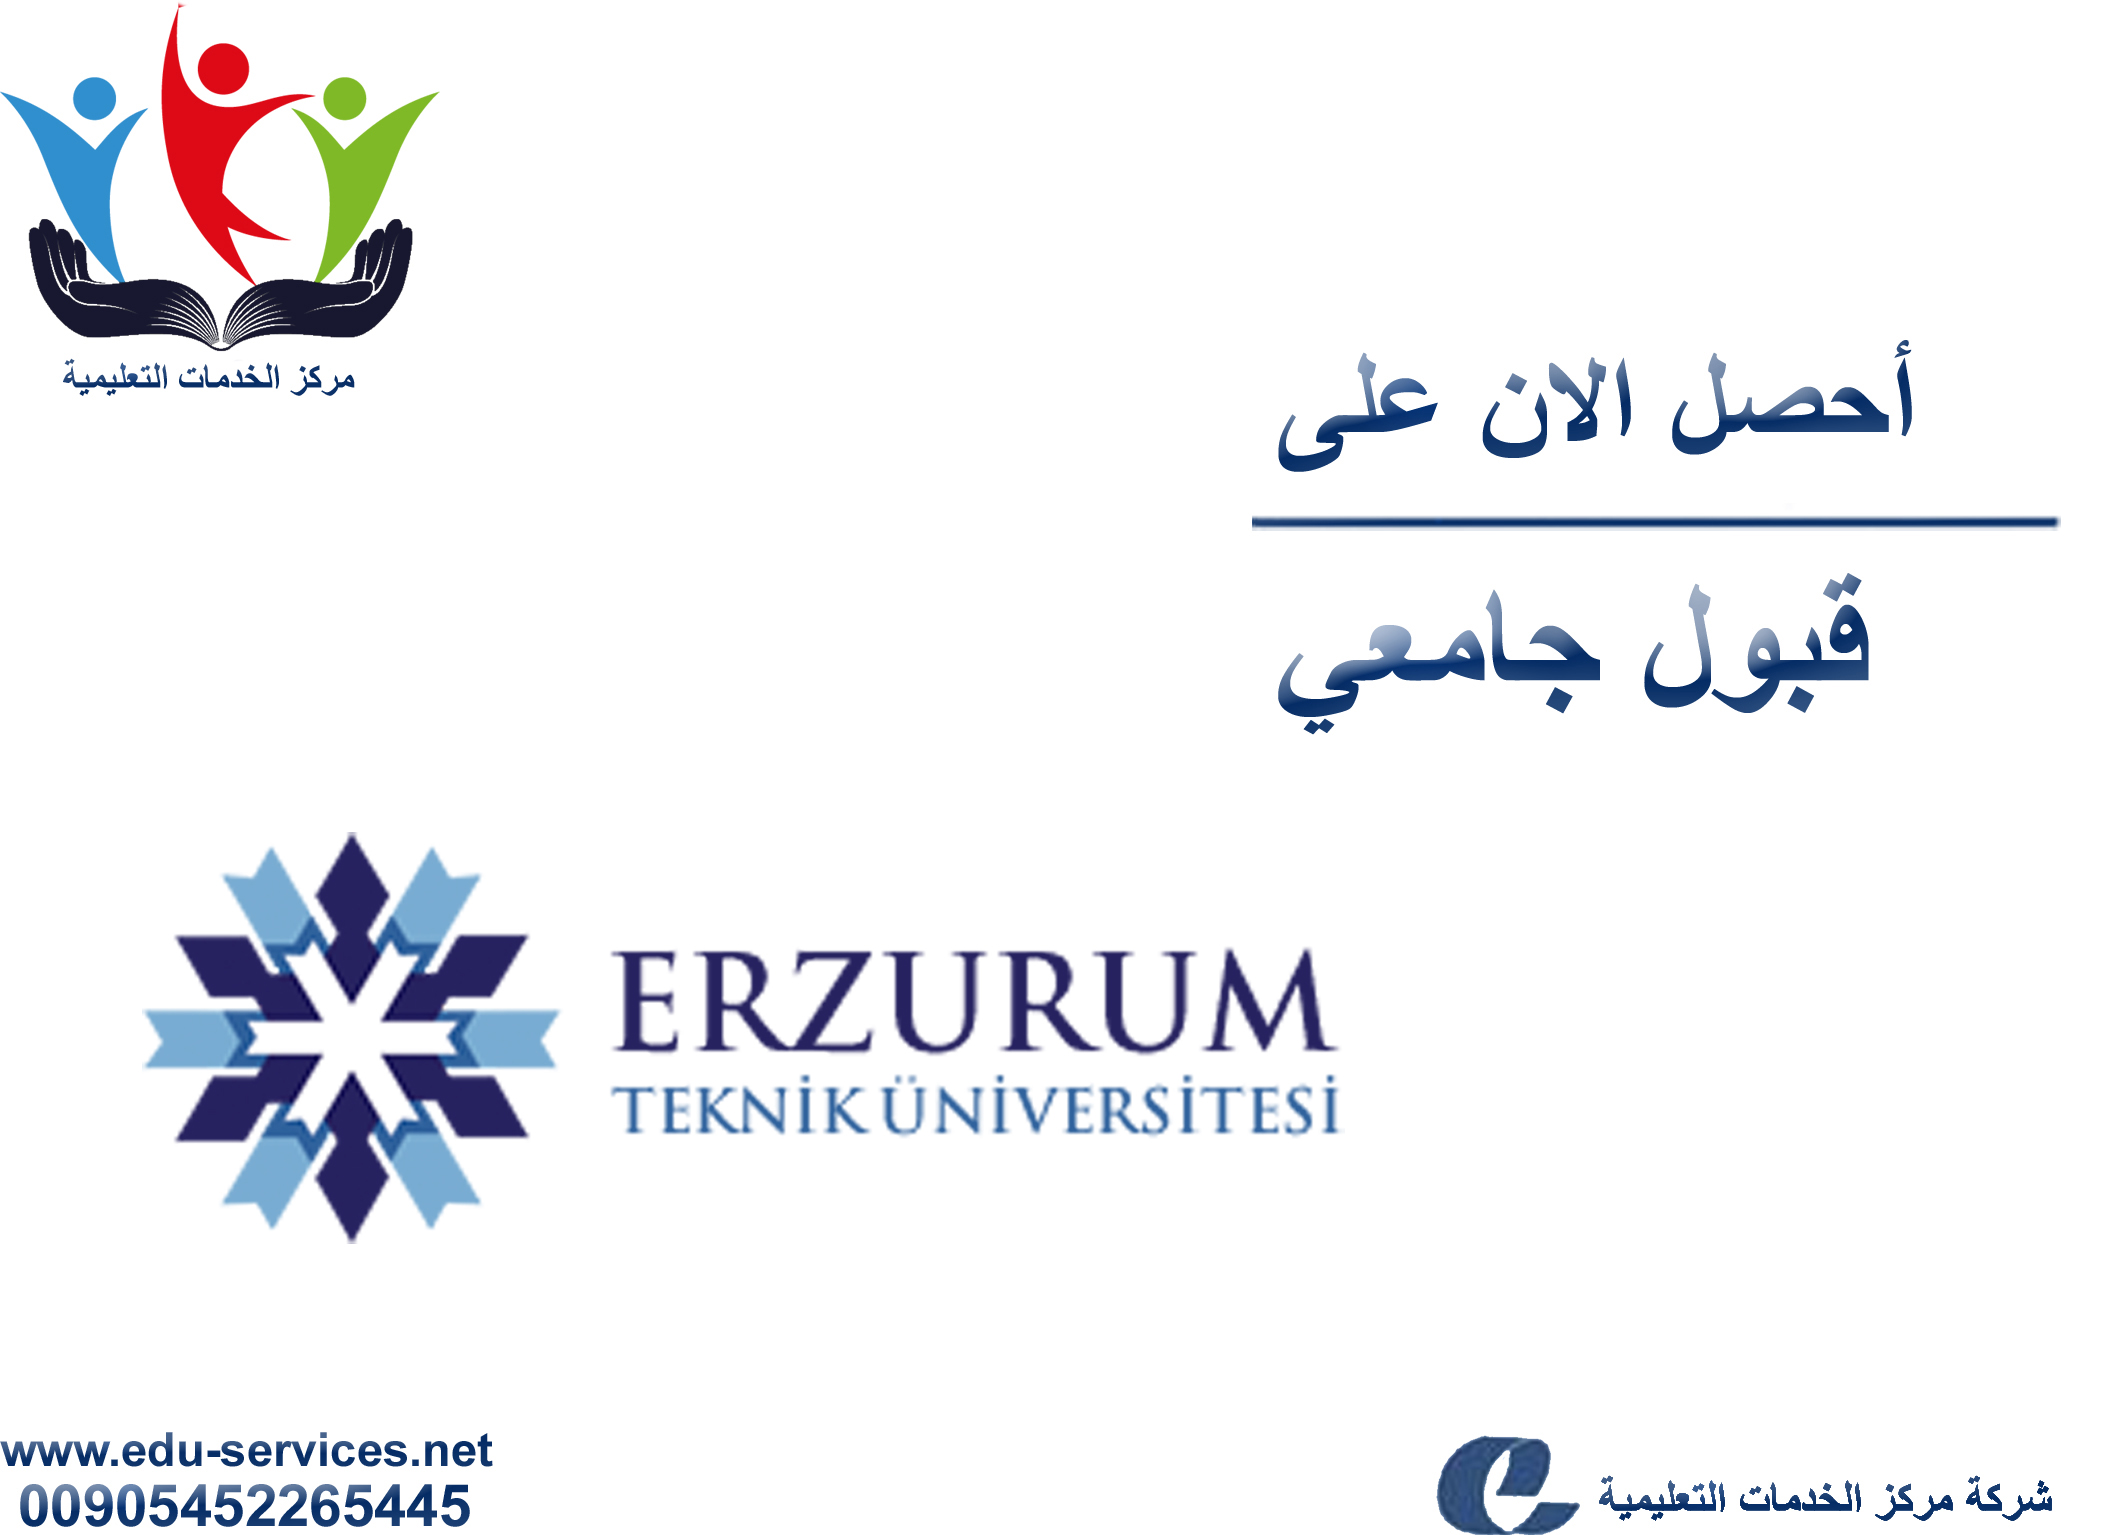 افتتاح التسجيل في جامعة ارزروم تكنيك للعام 2019-2020